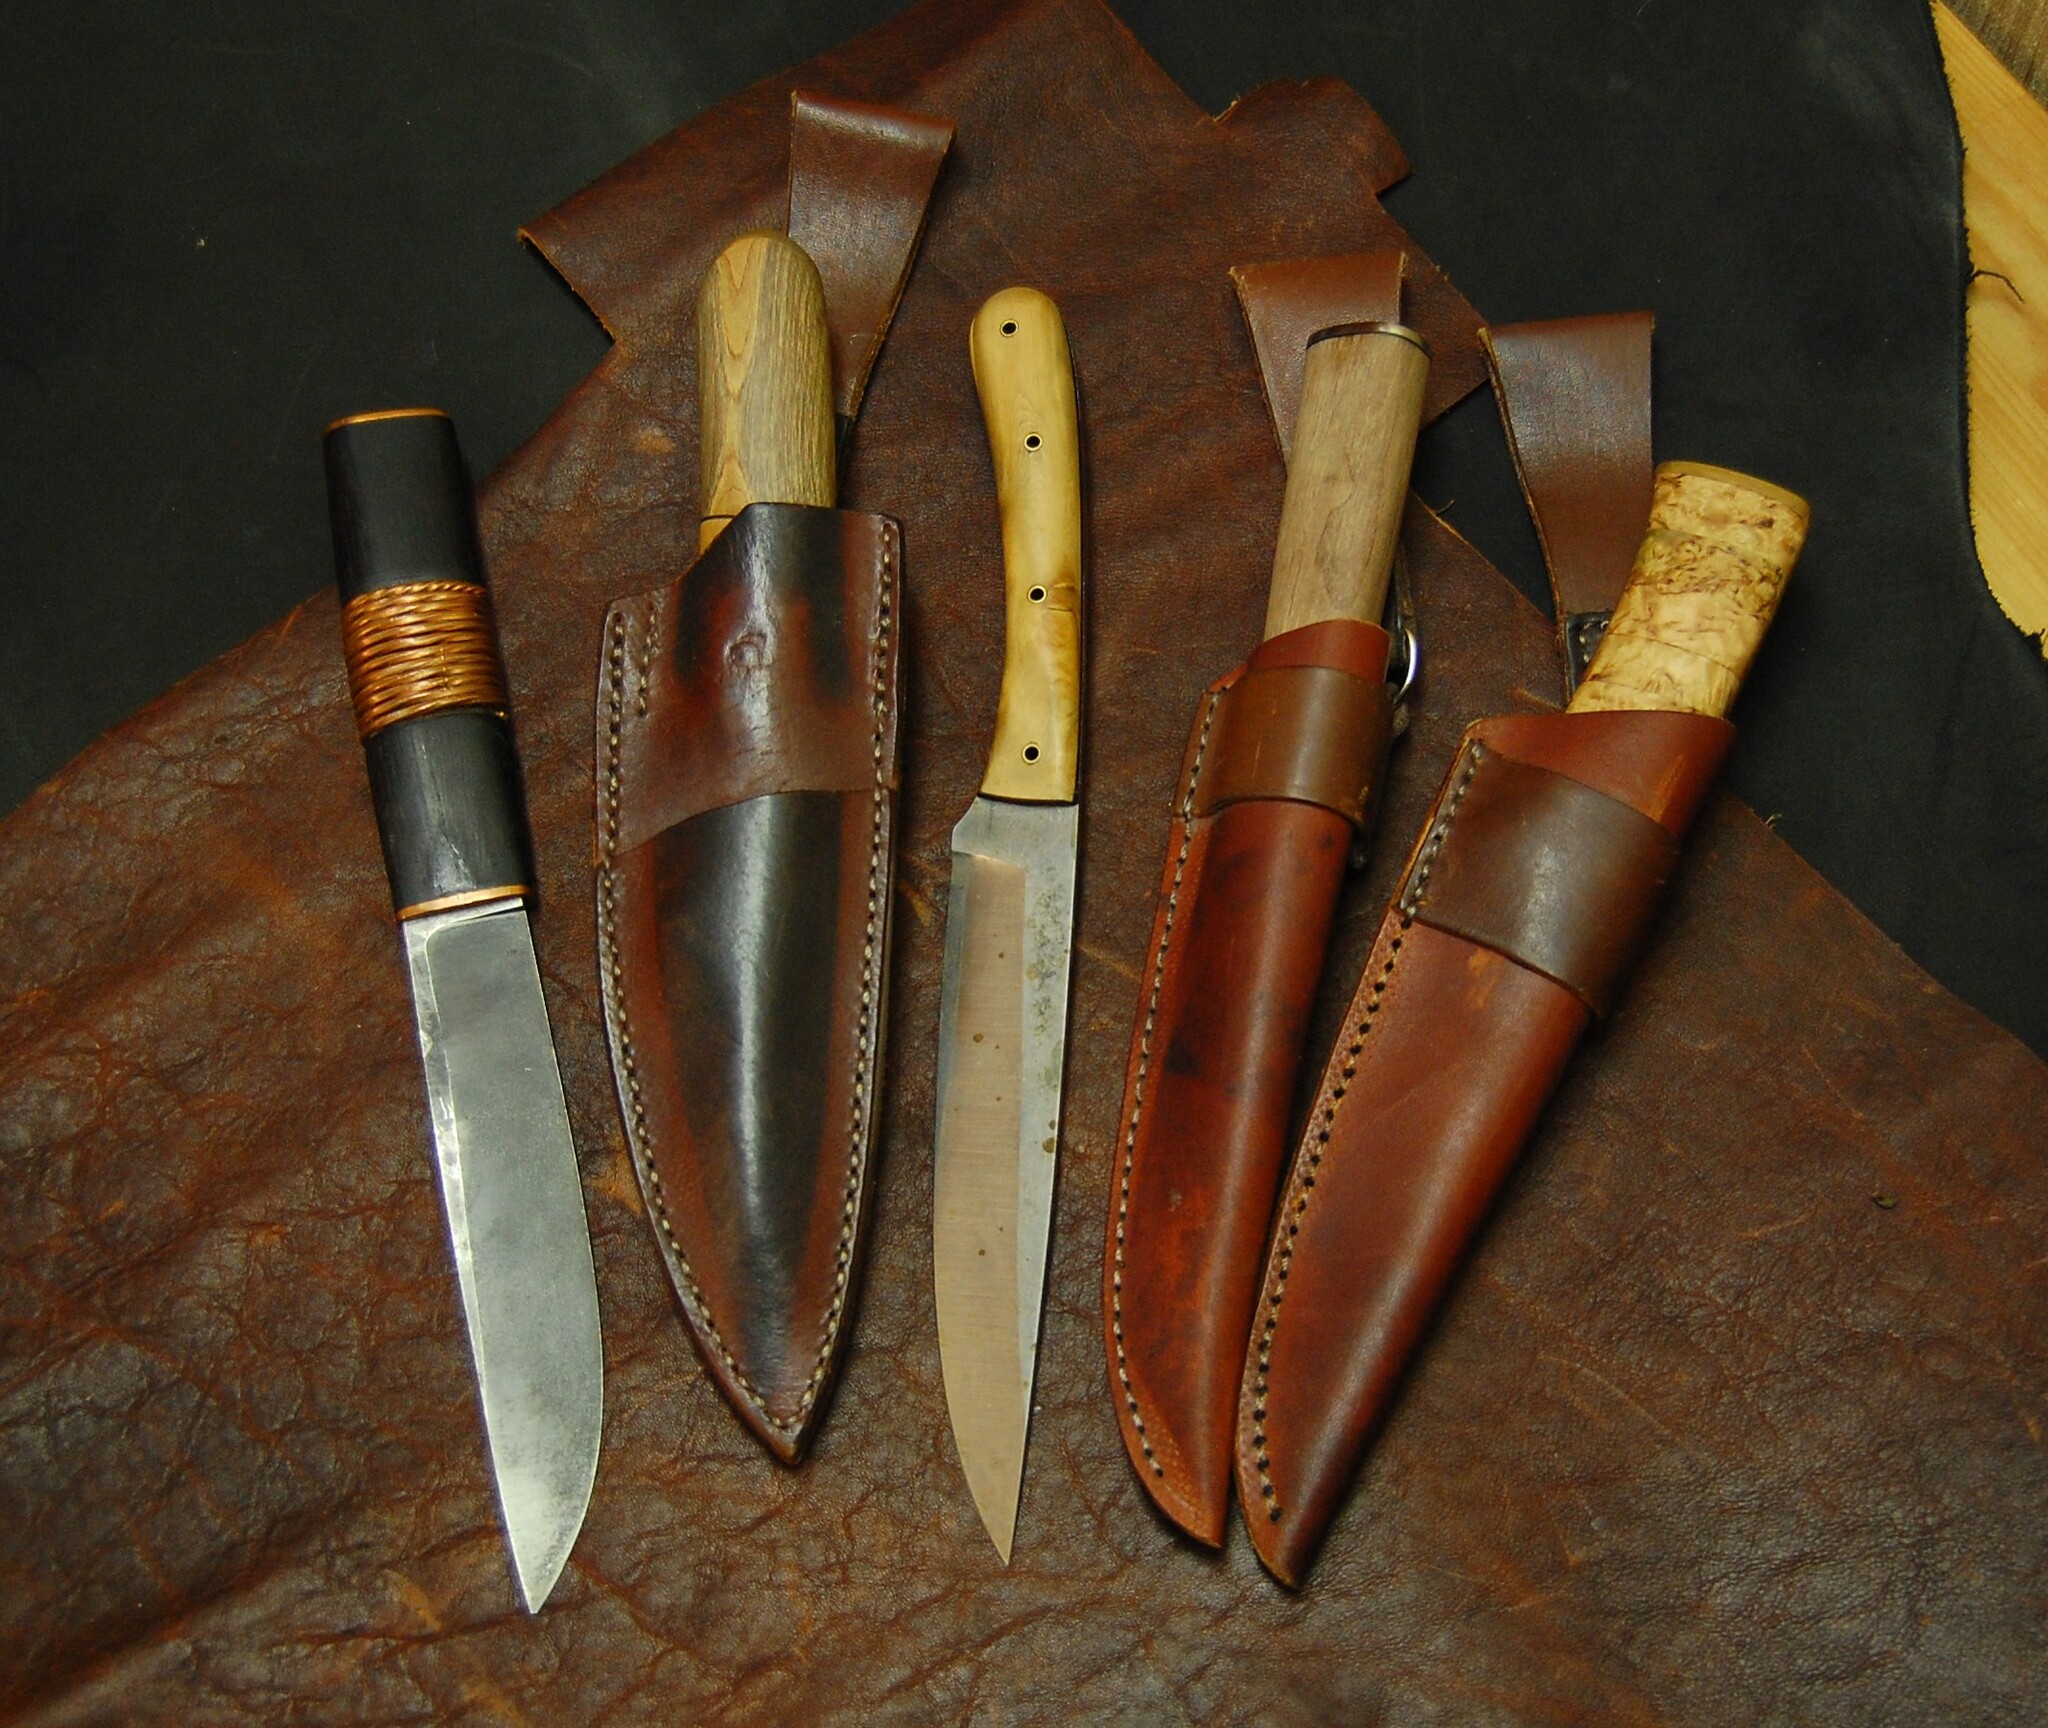 Купить якутский нож недорого. Цена на режущие инструменты в интернет-магазине nozhiru